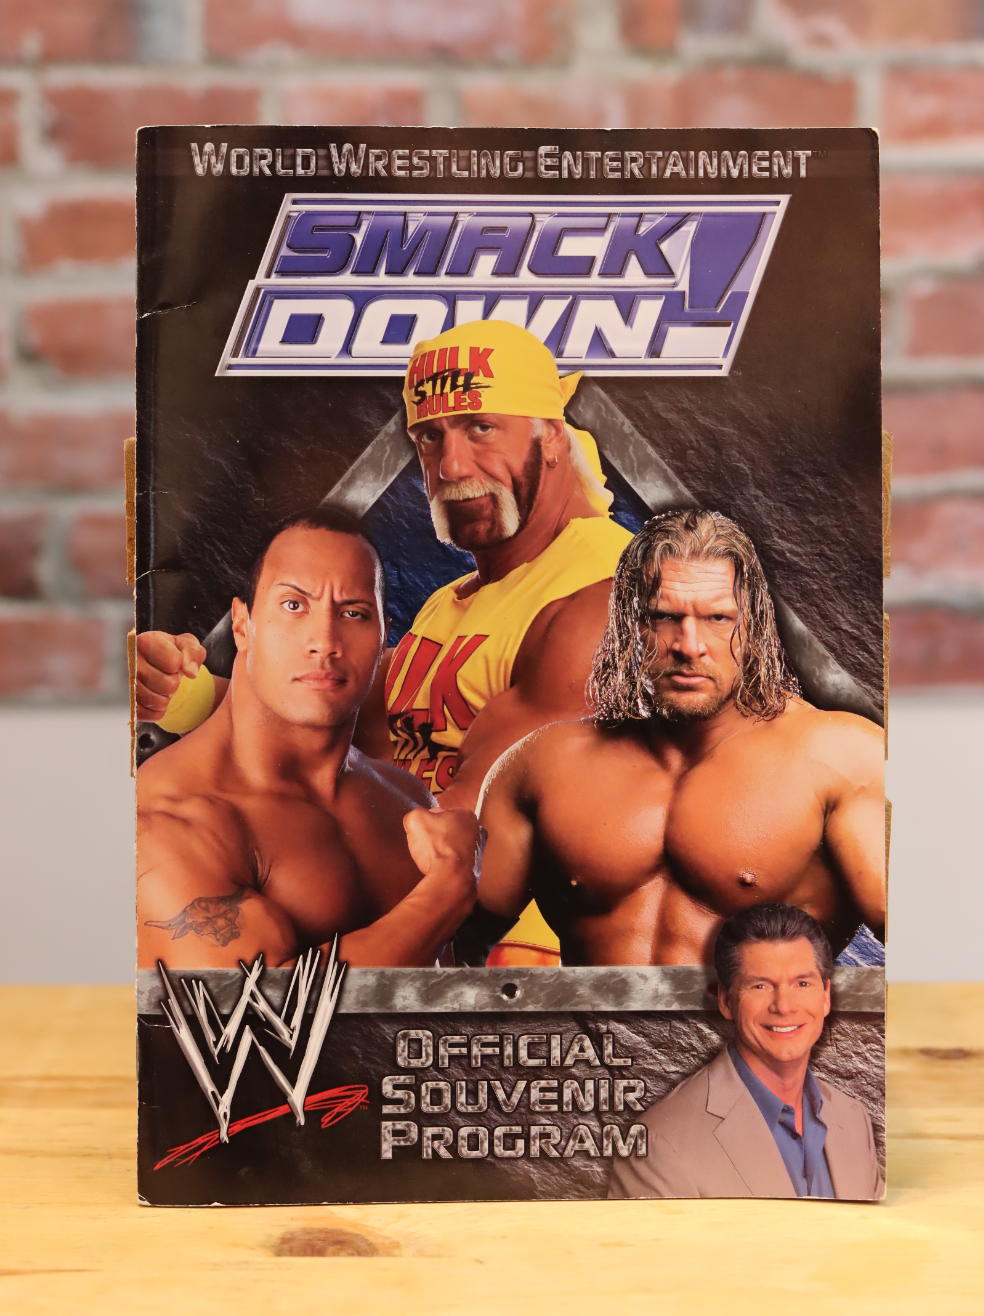 Original WWF WWE Wrestling Smackdown Live Event Souvenir Program (2002)